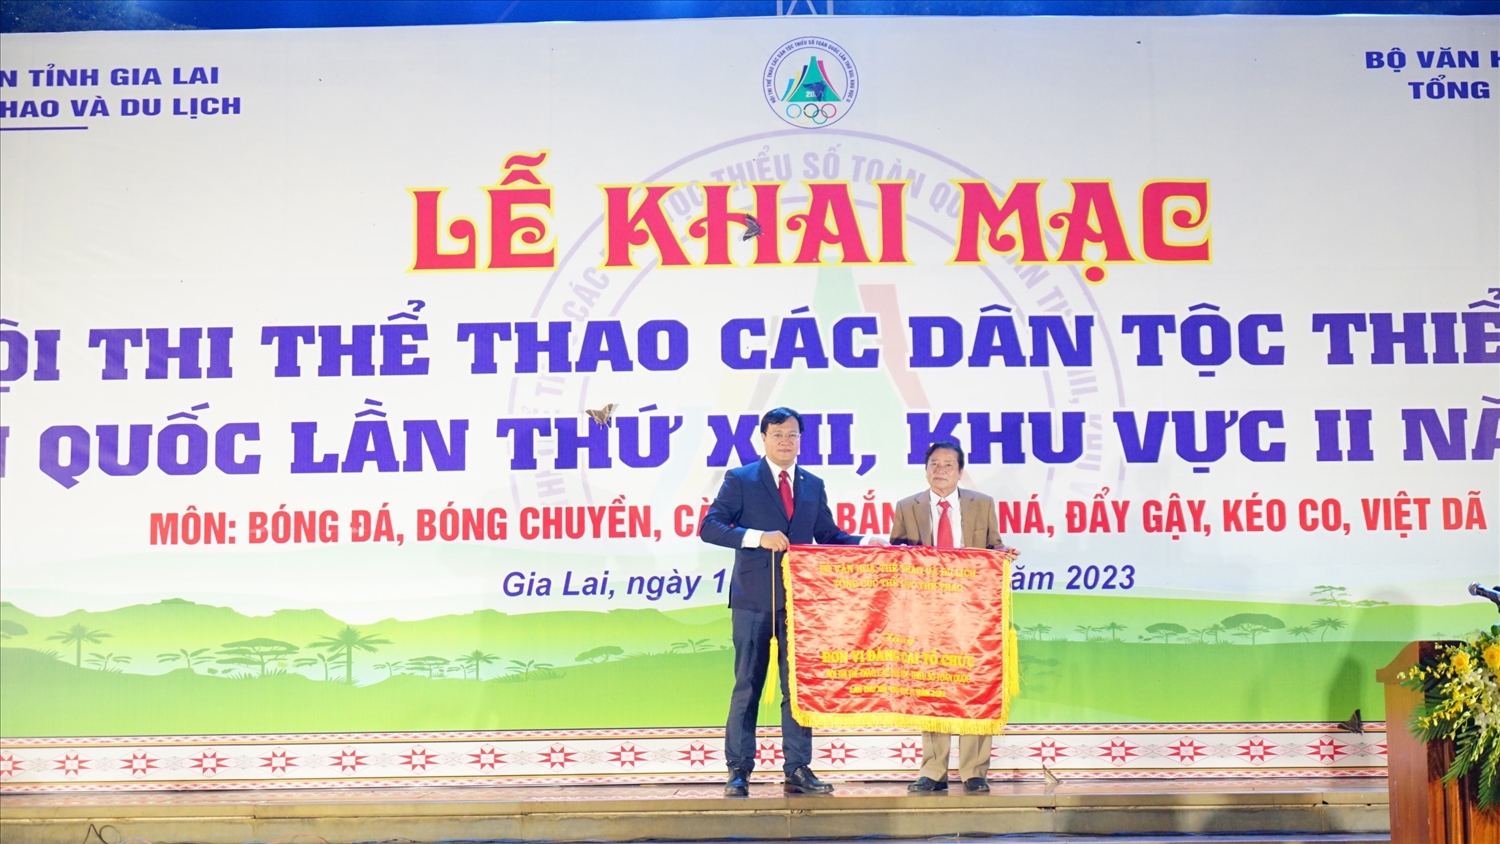 Tổng Cục trưởng Tổng cục Thể dục thể thao Đặng Việt Hà trao cờ lưu niệm cho tỉnh Gia Lai - Đơn vị đăng cai tổ chức Hội thi